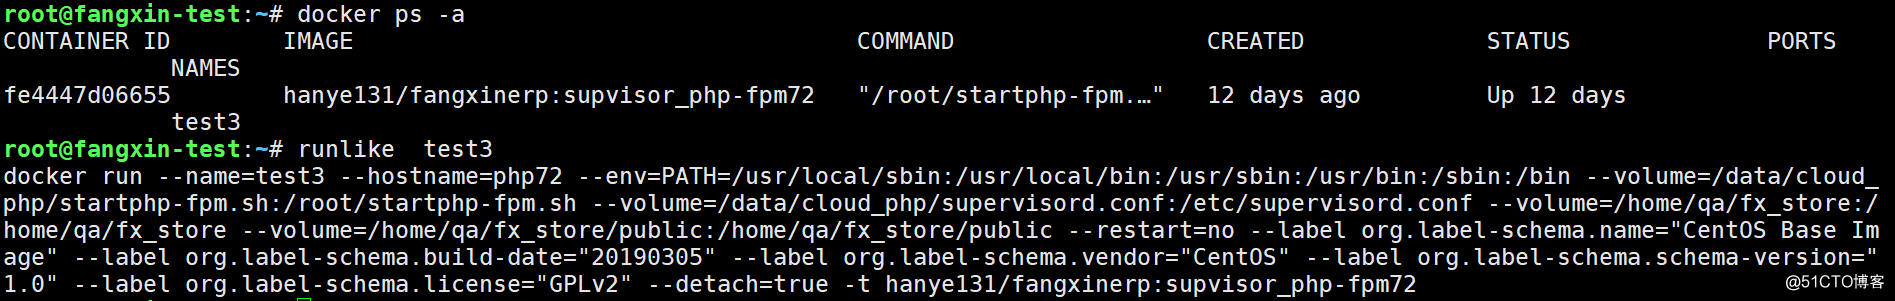 View docker run start command parameters